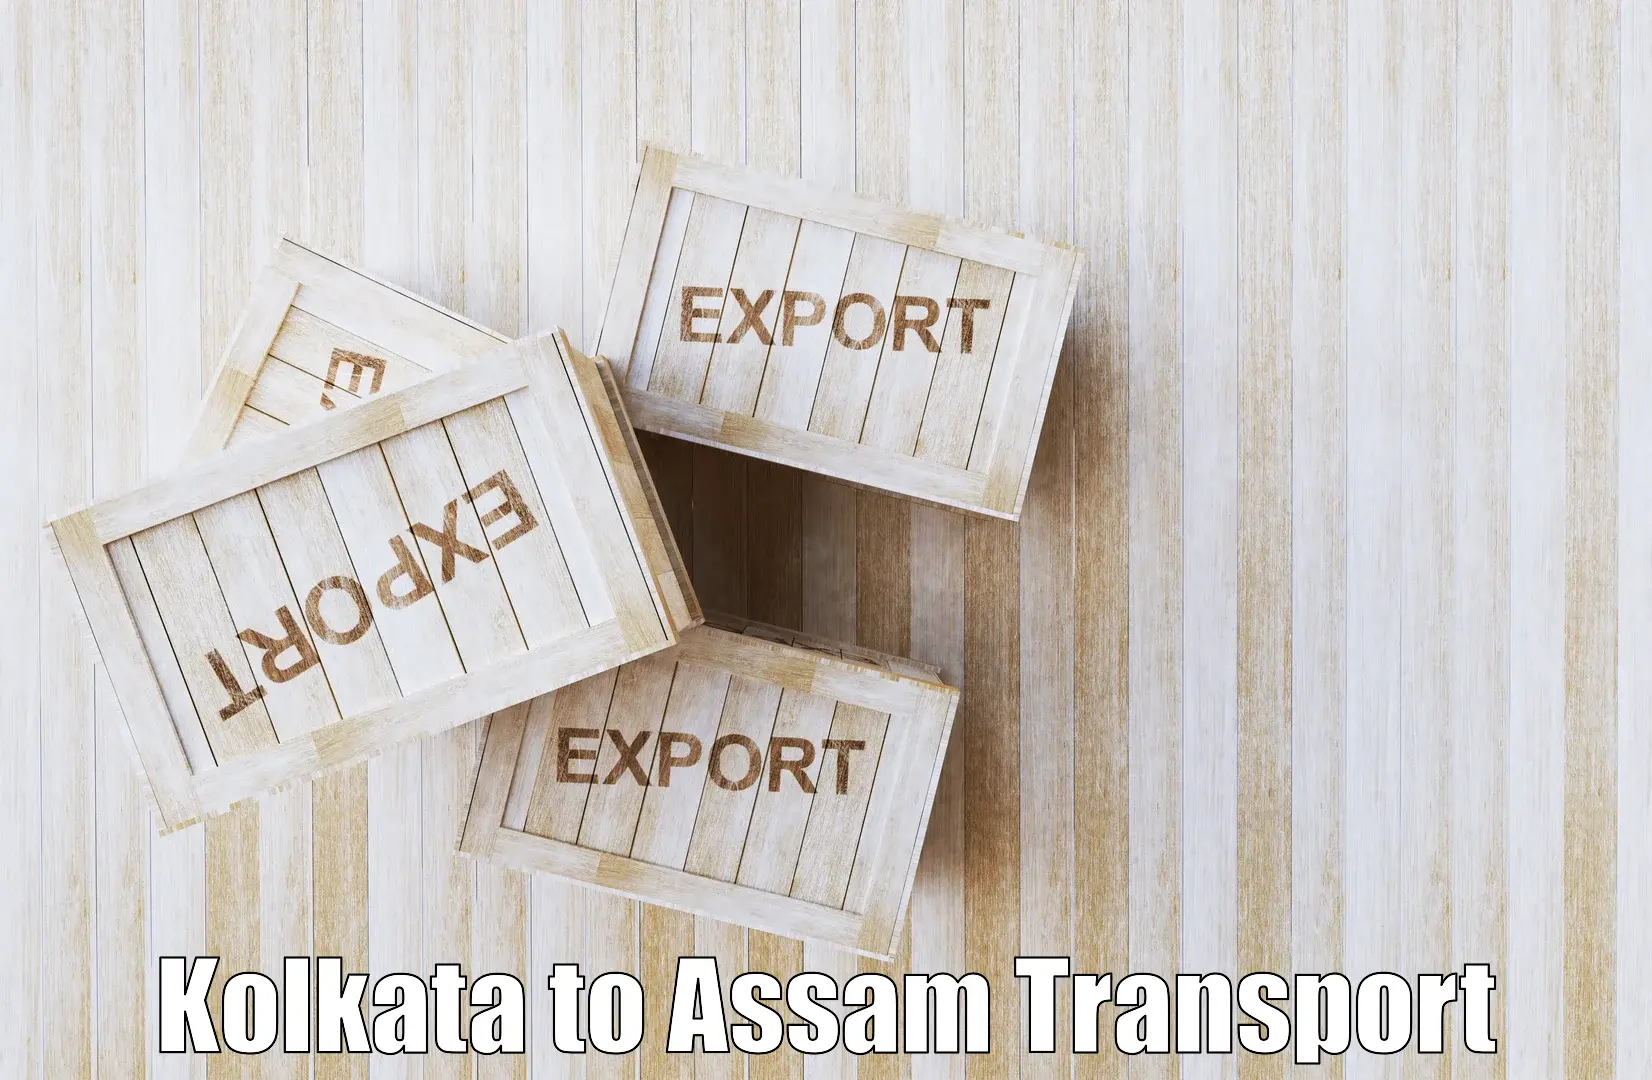 Transport shared services Kolkata to Mangaldoi